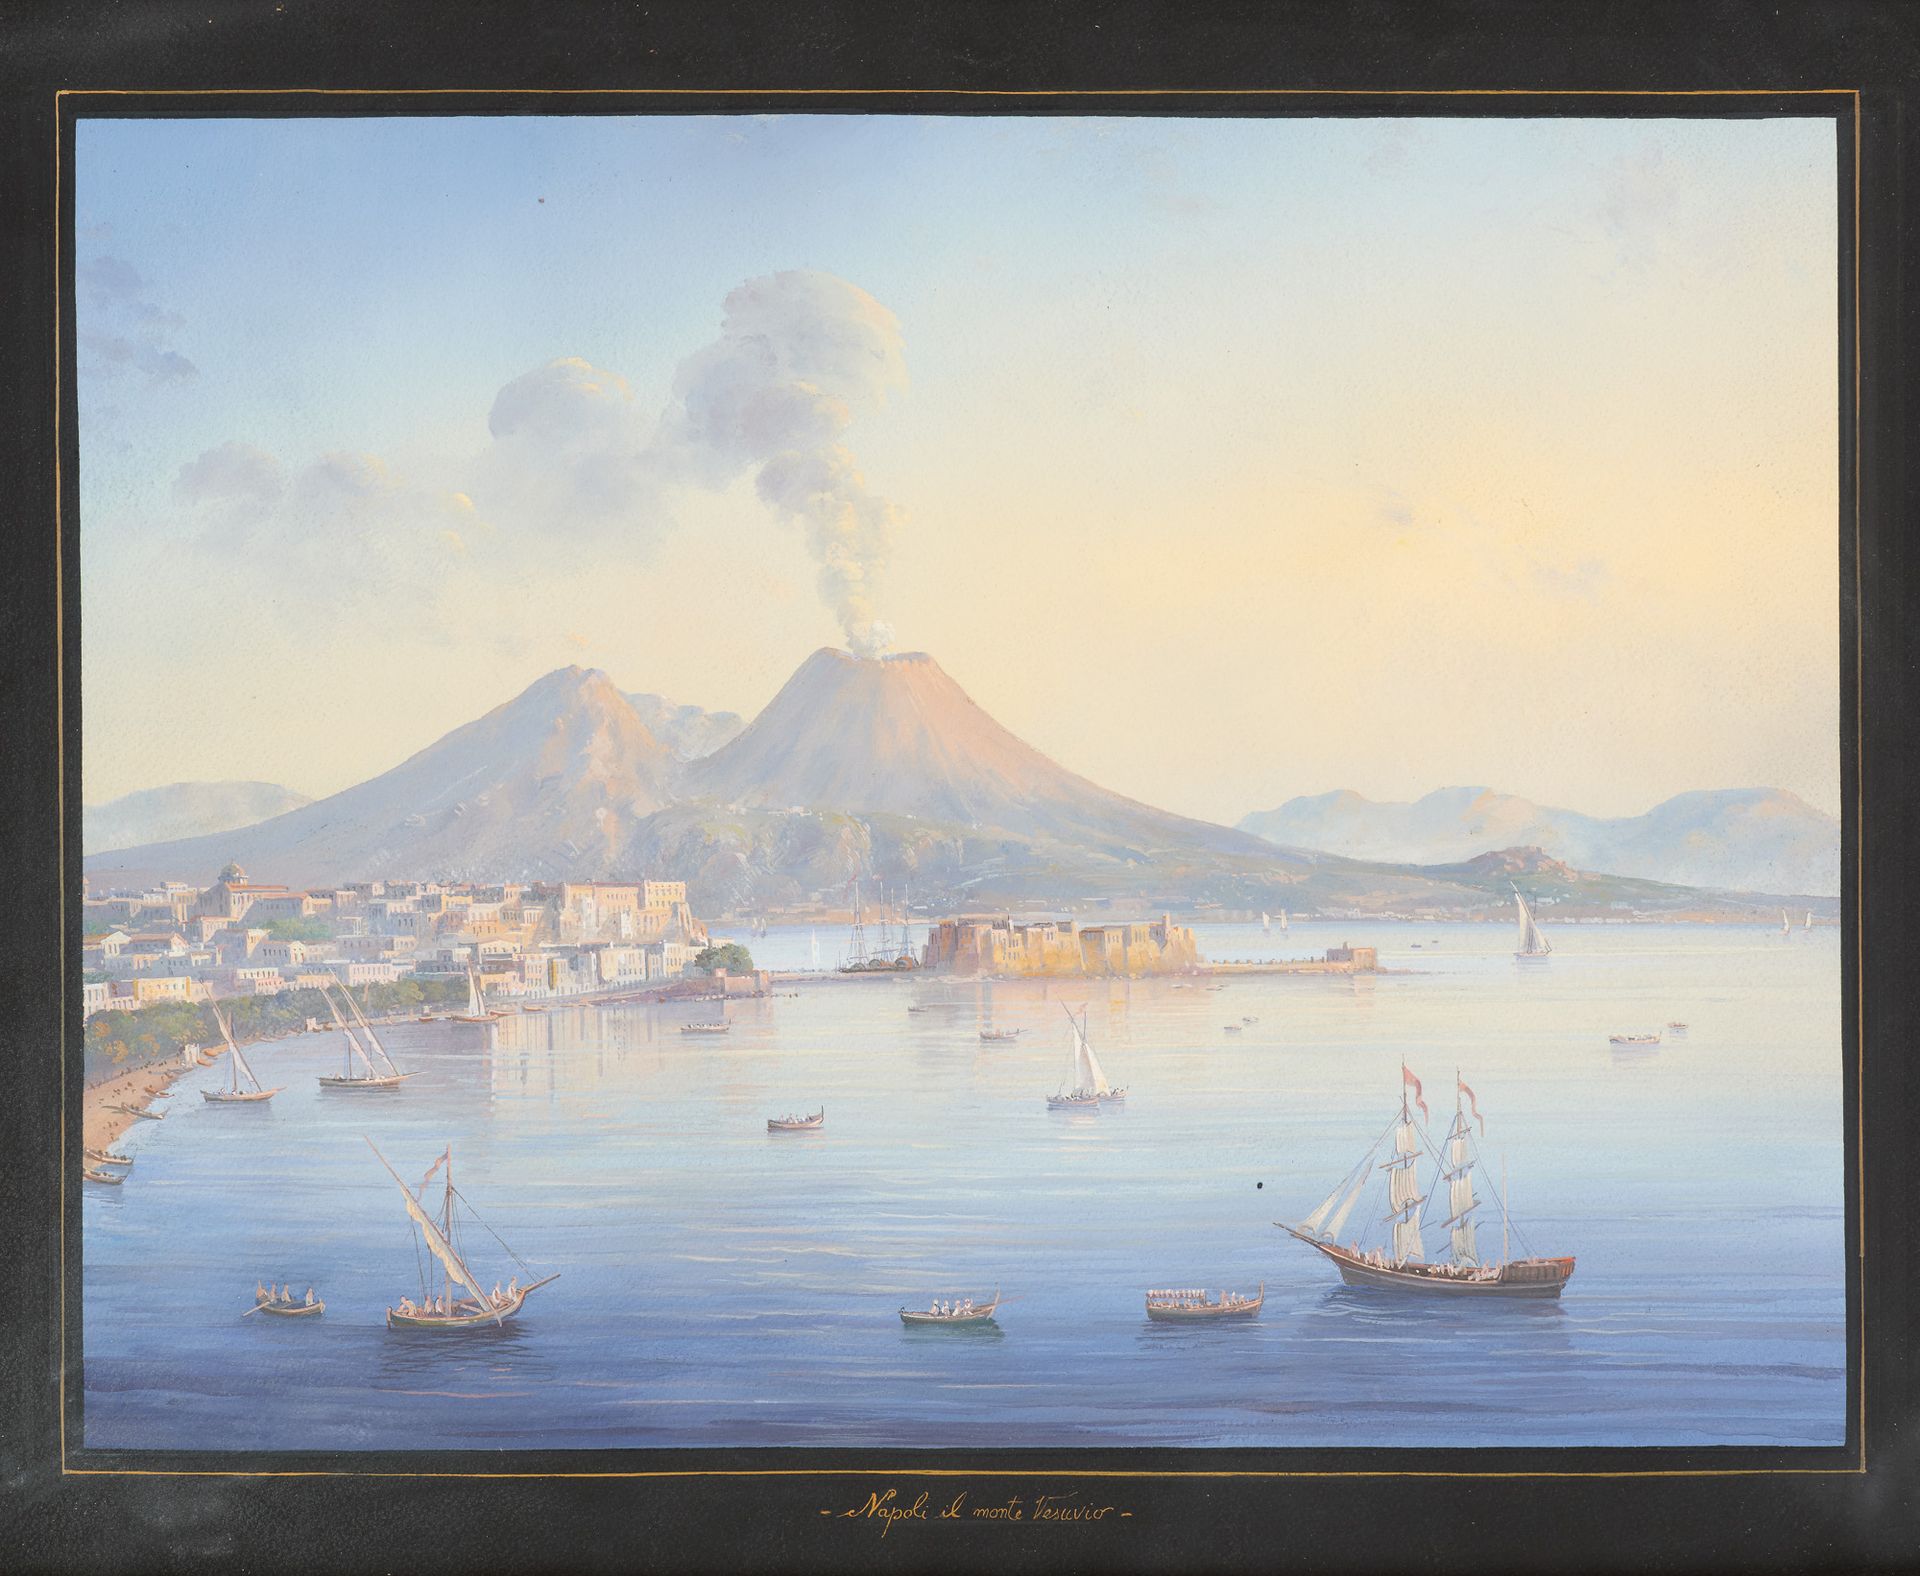 Travail italien 20e. 纸上水粉画："Napoli il monte Vesuvio"。

题目是。

尺寸：图像35 x 46厘米。